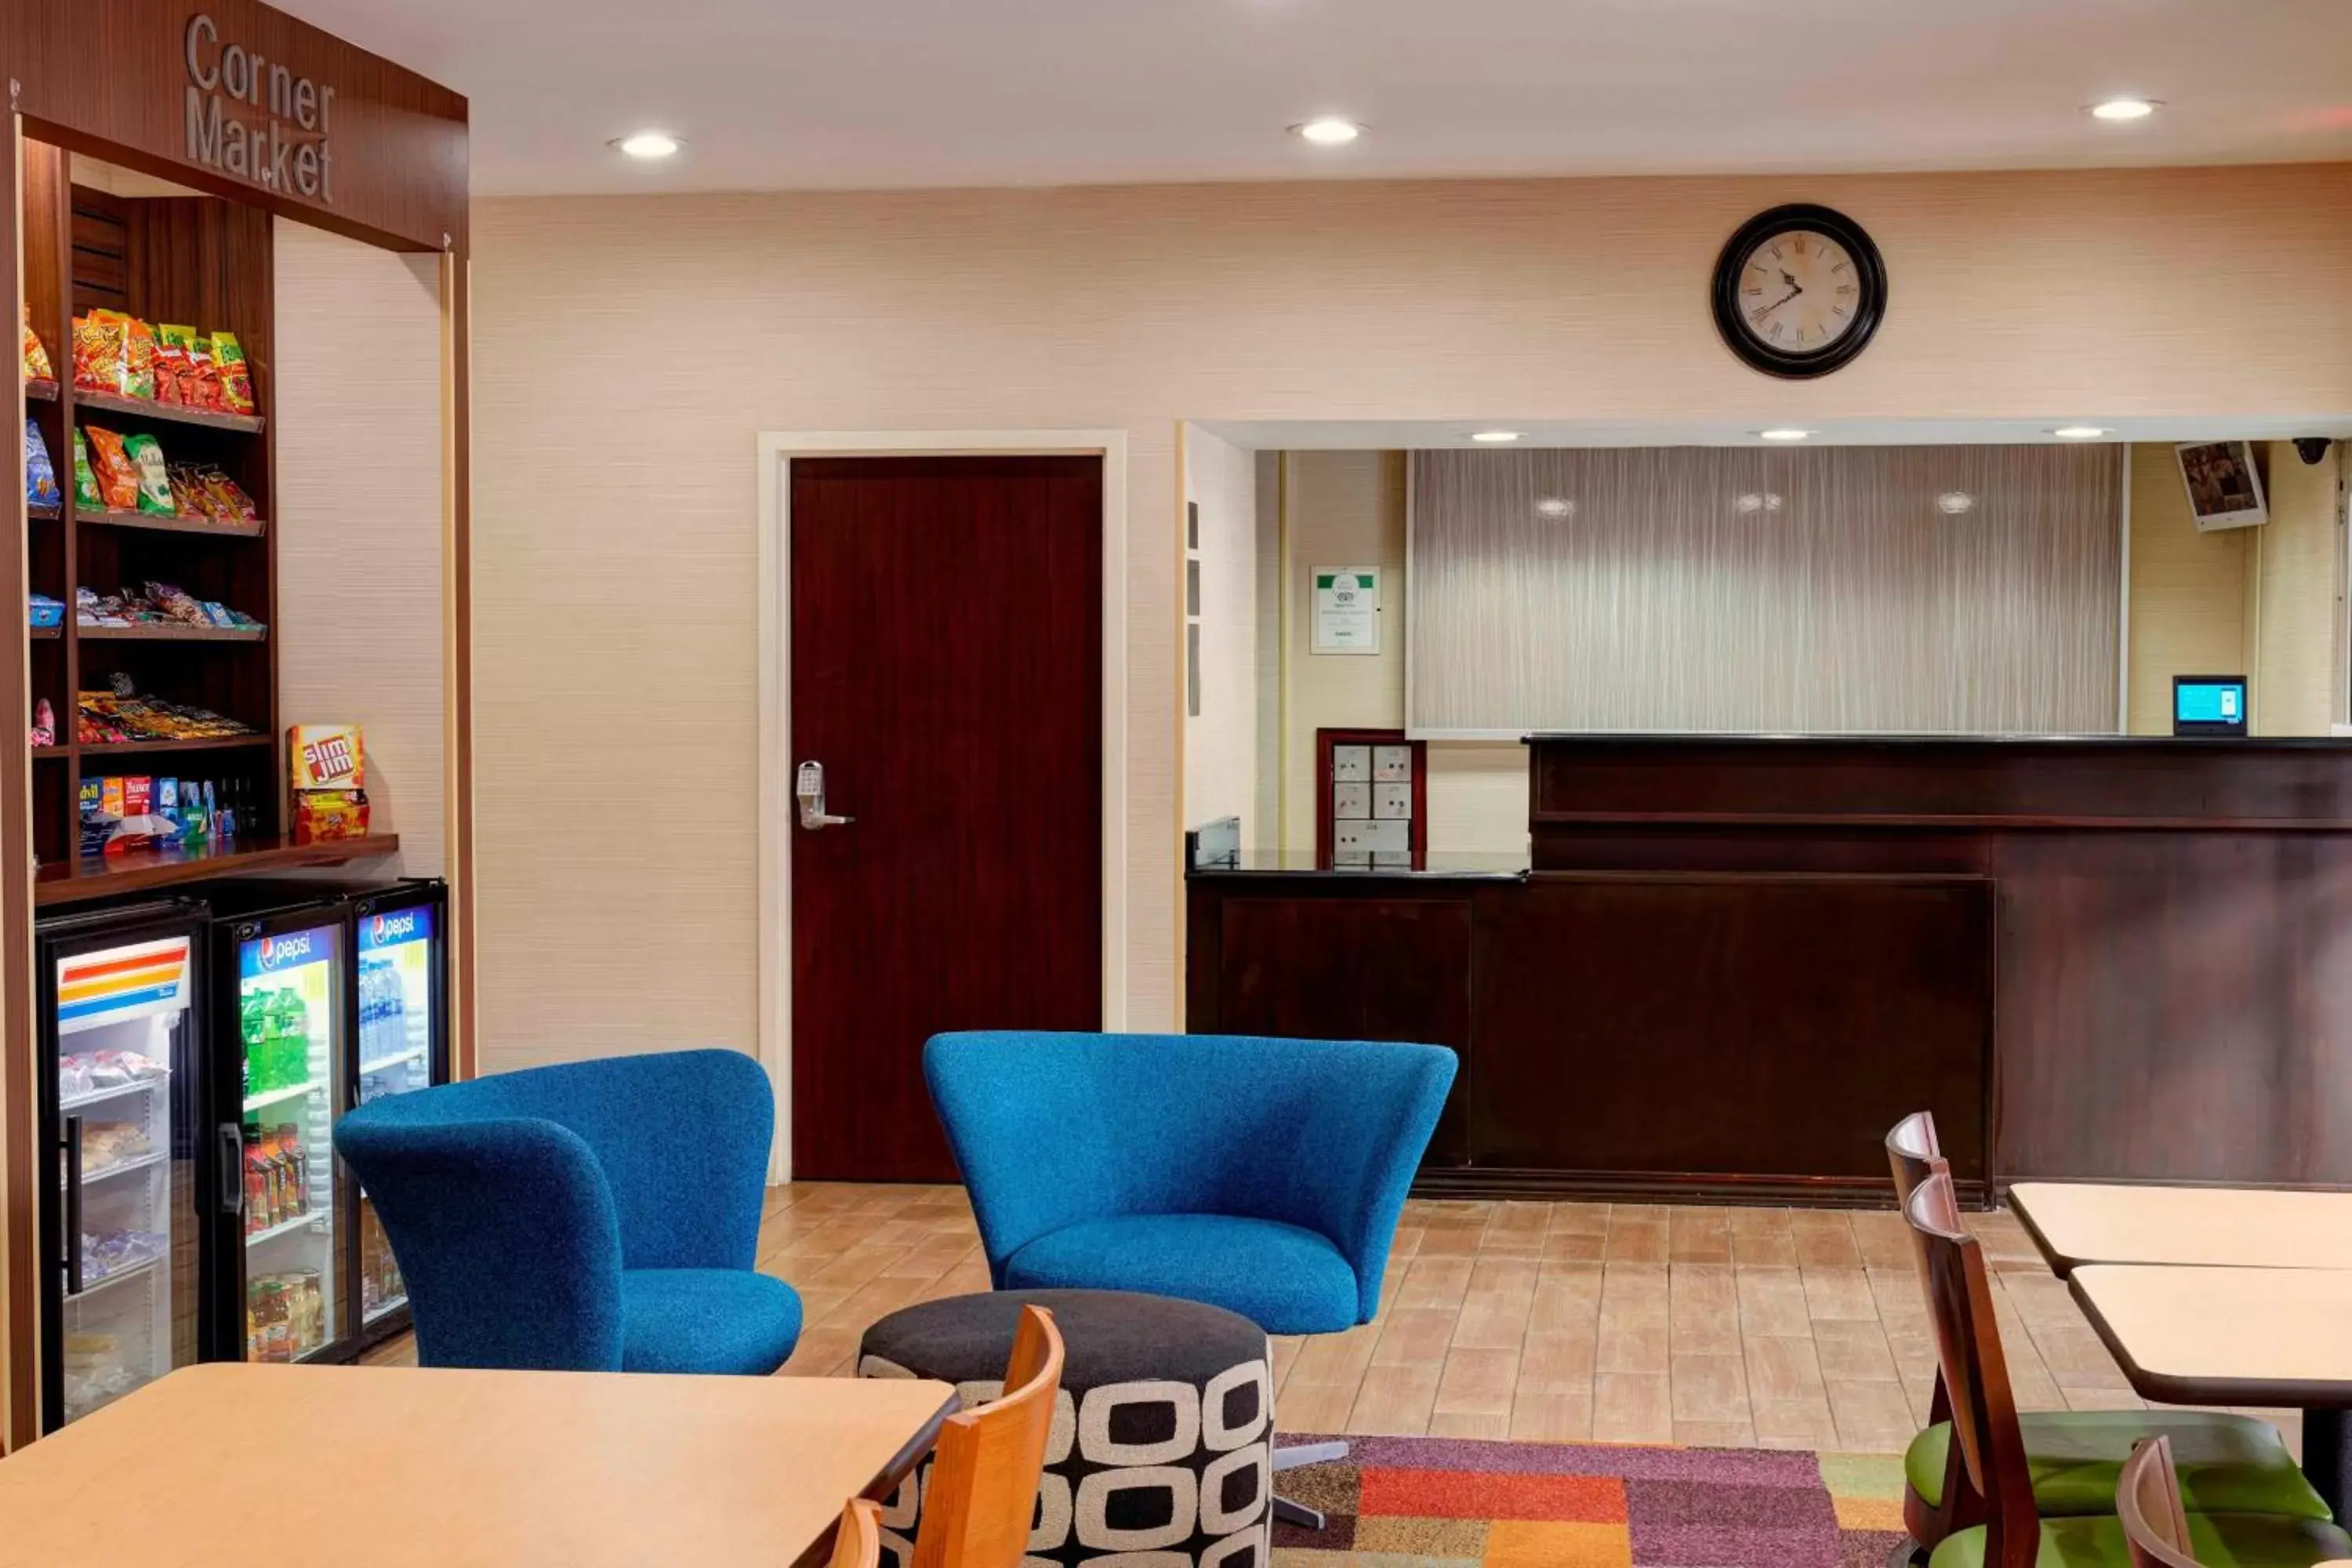 Lobby or reception, Lobby/Reception in Fairfield Inn & Suites Detroit Farmington Hills